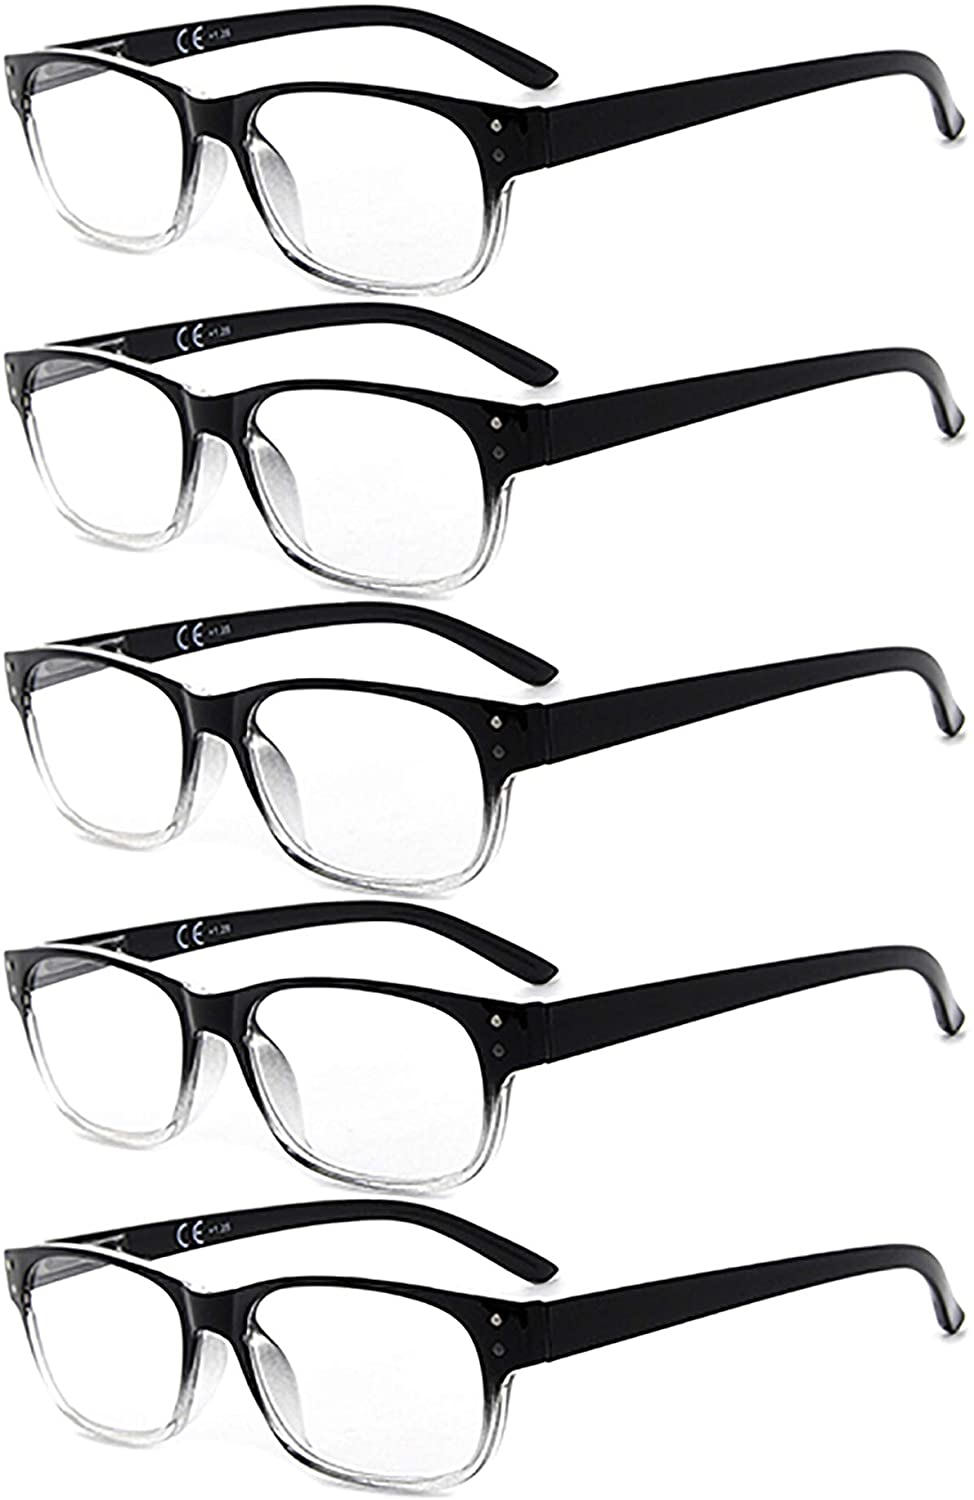 Reading Sunglasses 5-Pack Design Reader for Women Men Grey Tinted Lens ...